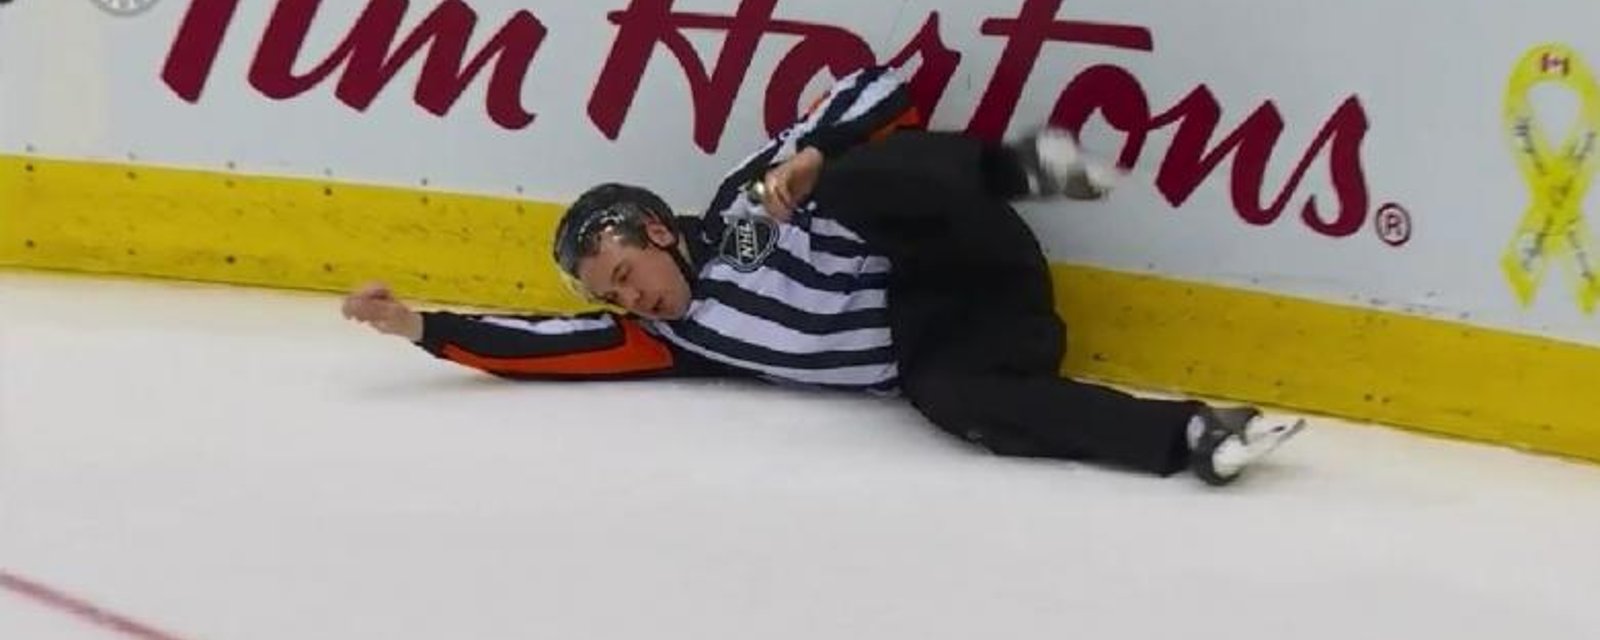 Un arbitre s'effondre sur la patinoire après une commotion!